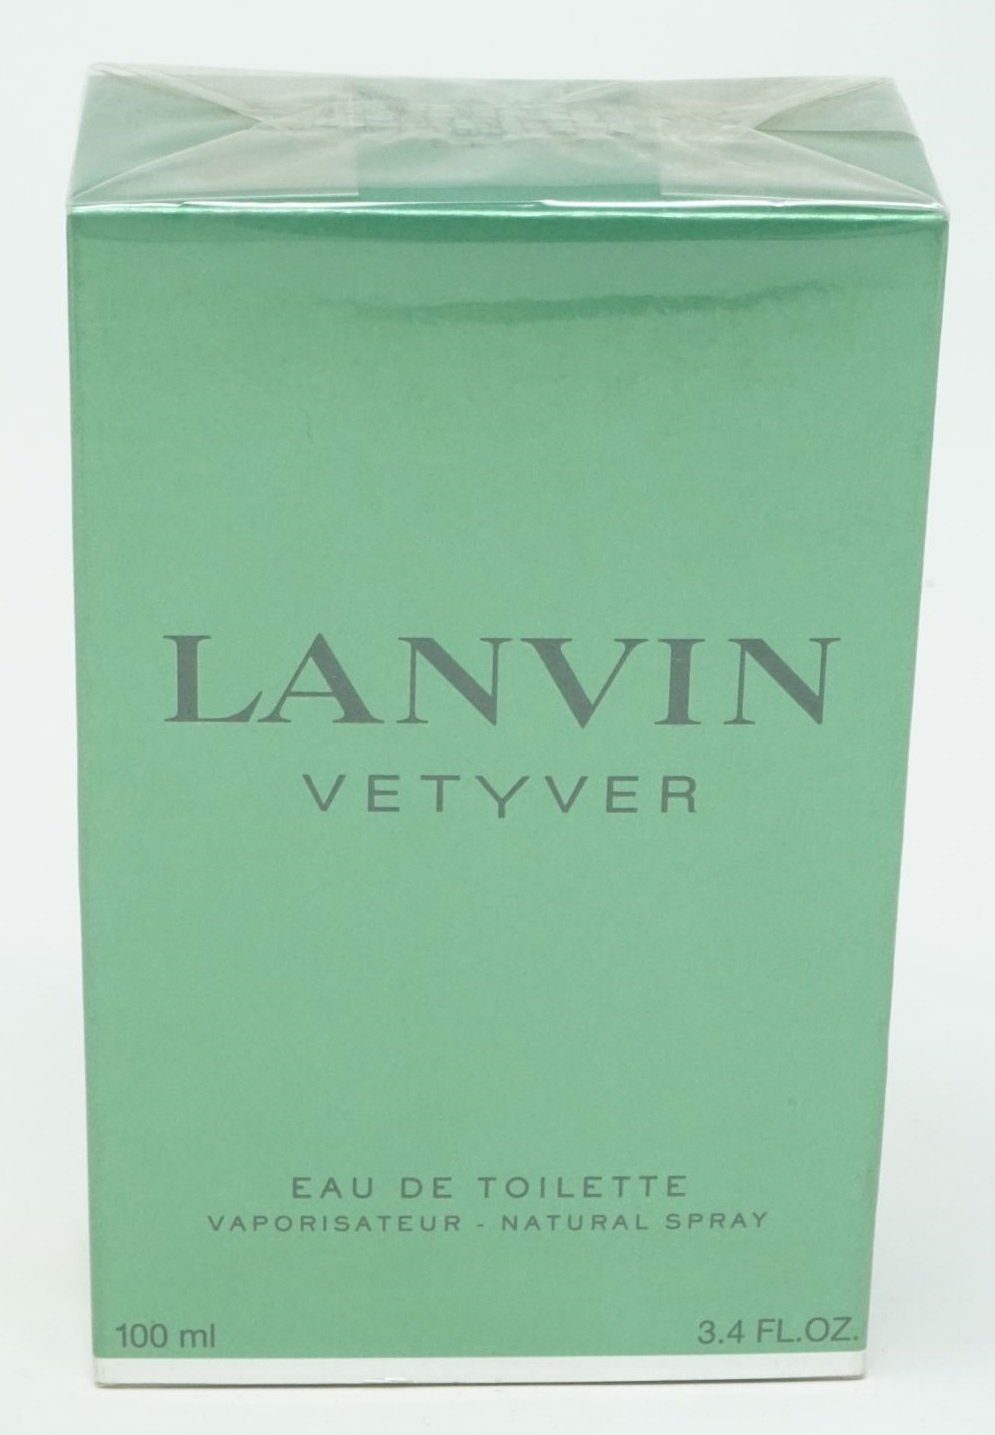 LANVIN Eau de Toilette Lanvin Vetyver 100 ml Eau de Toilette Spray